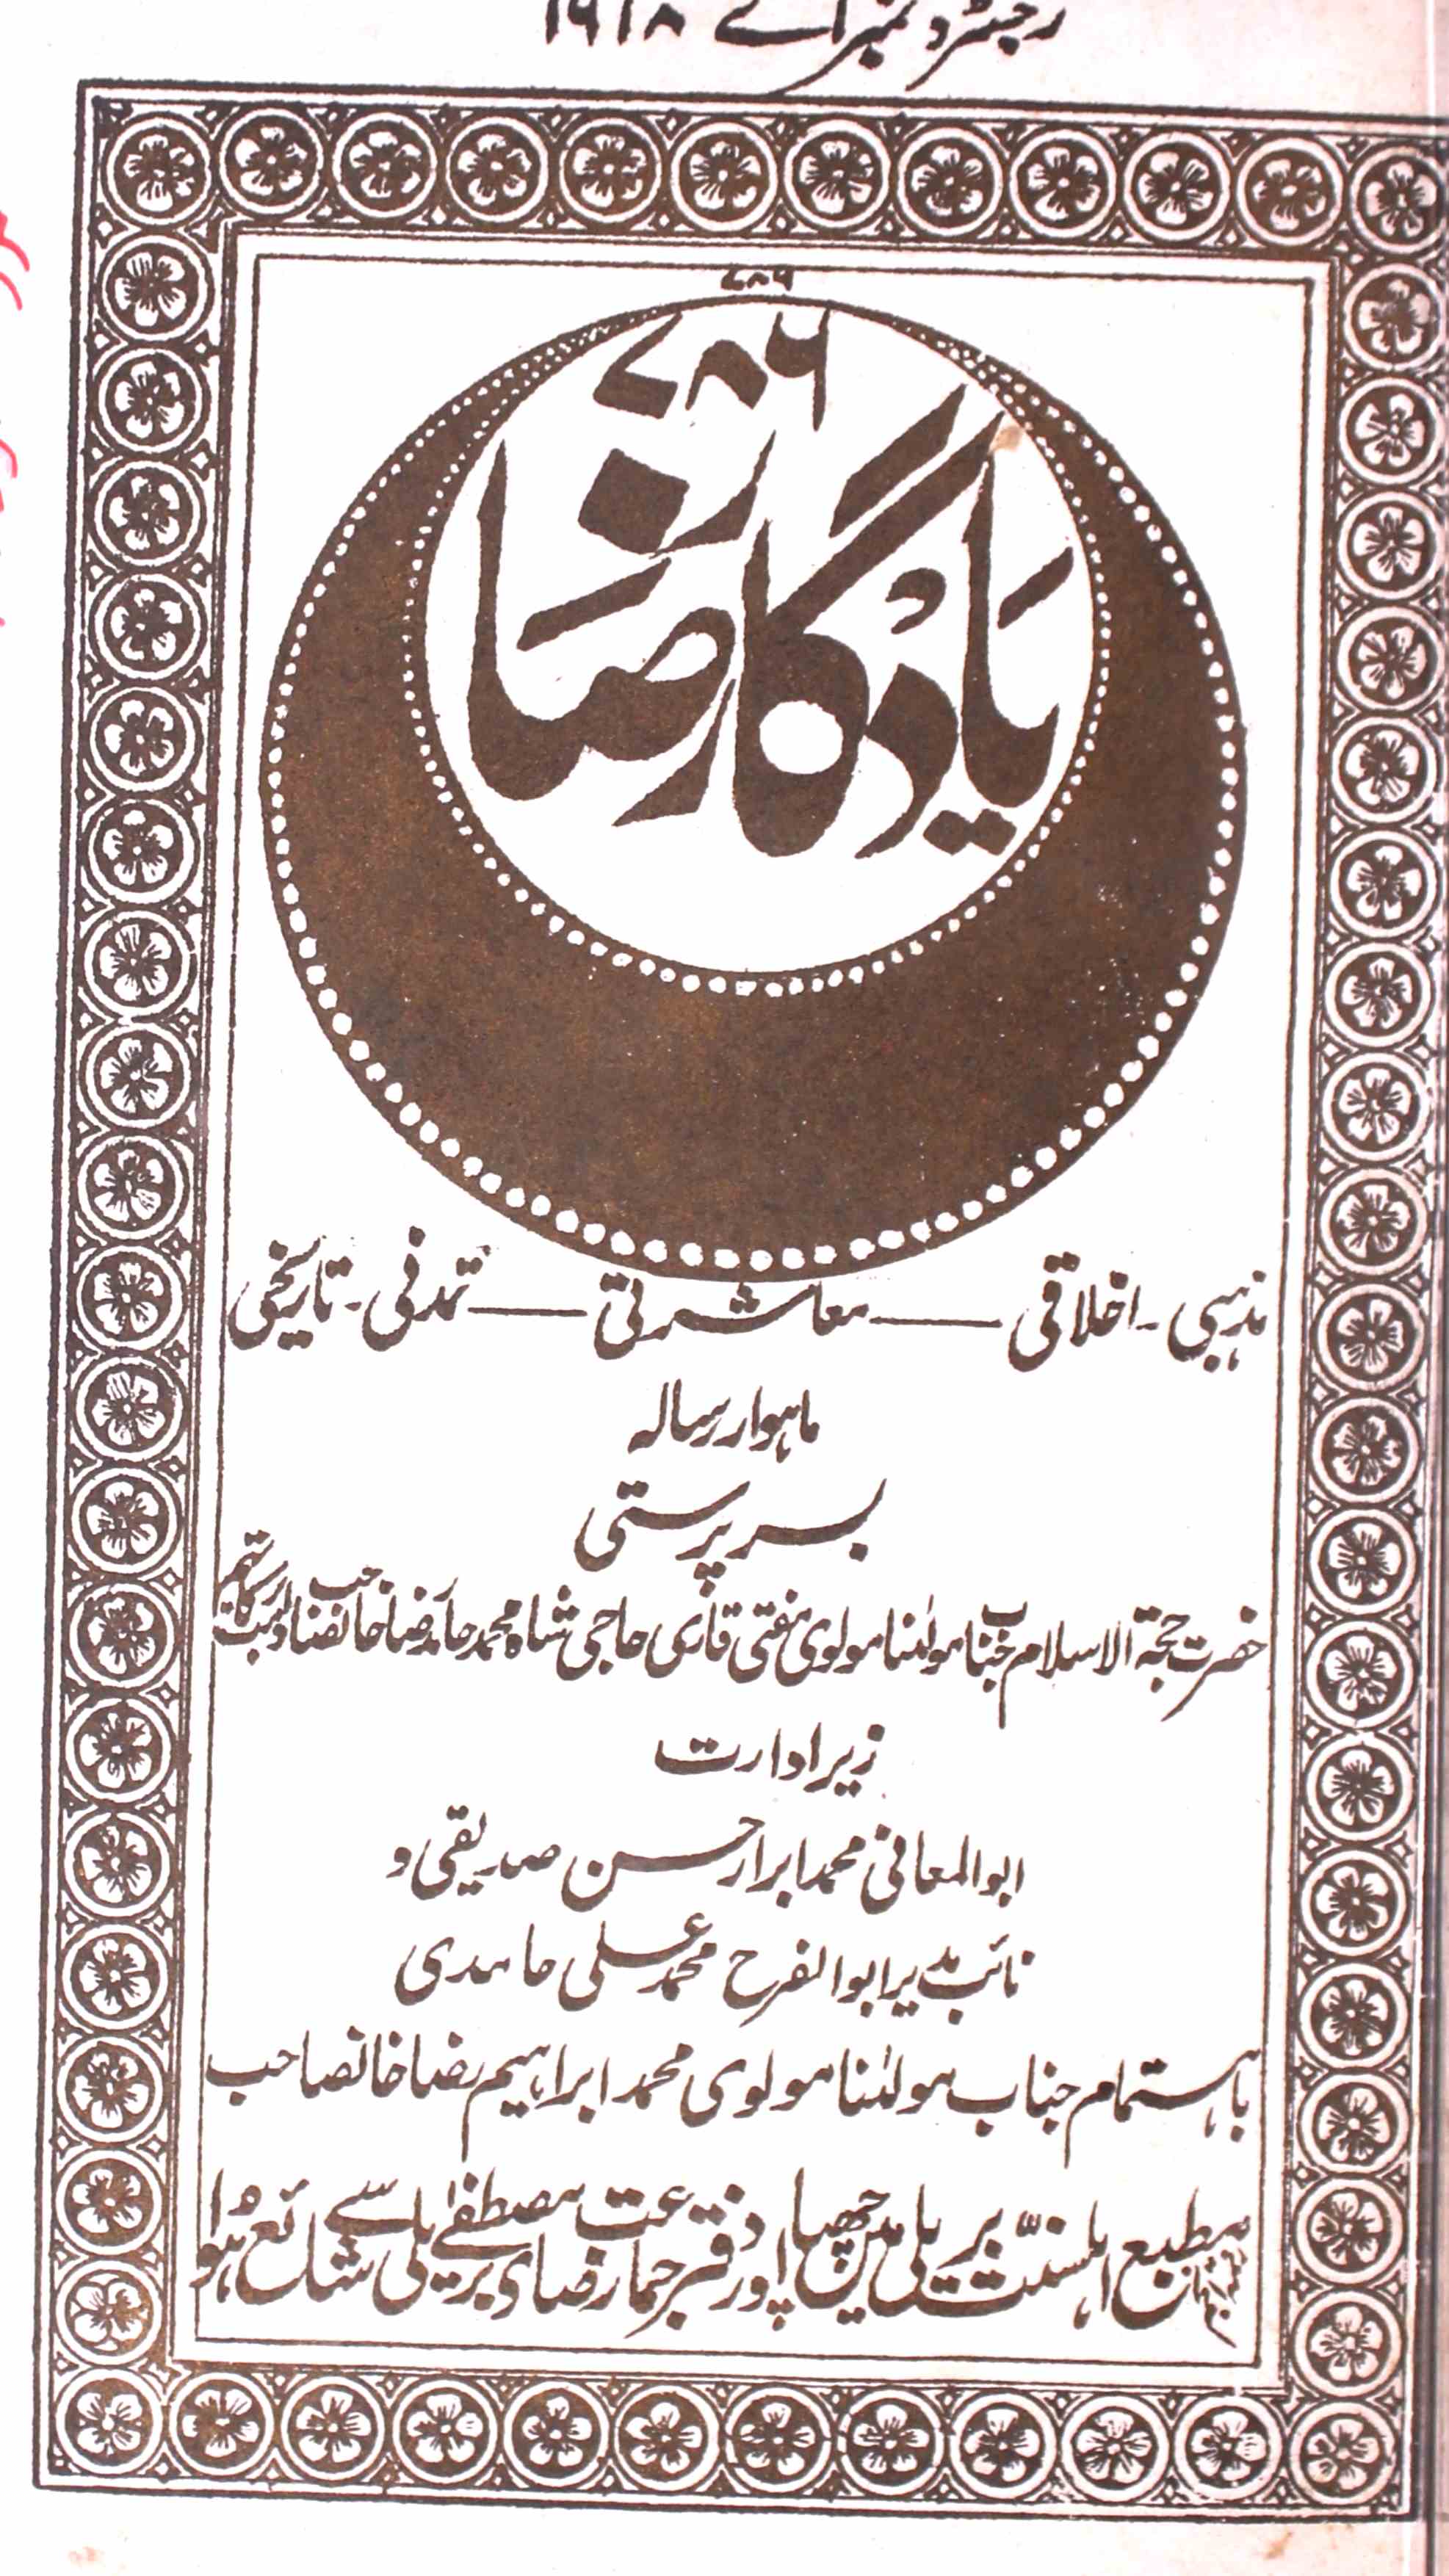 Yadgar e Raza Jild 1 No. 7 Ramazan 1345 Hijri